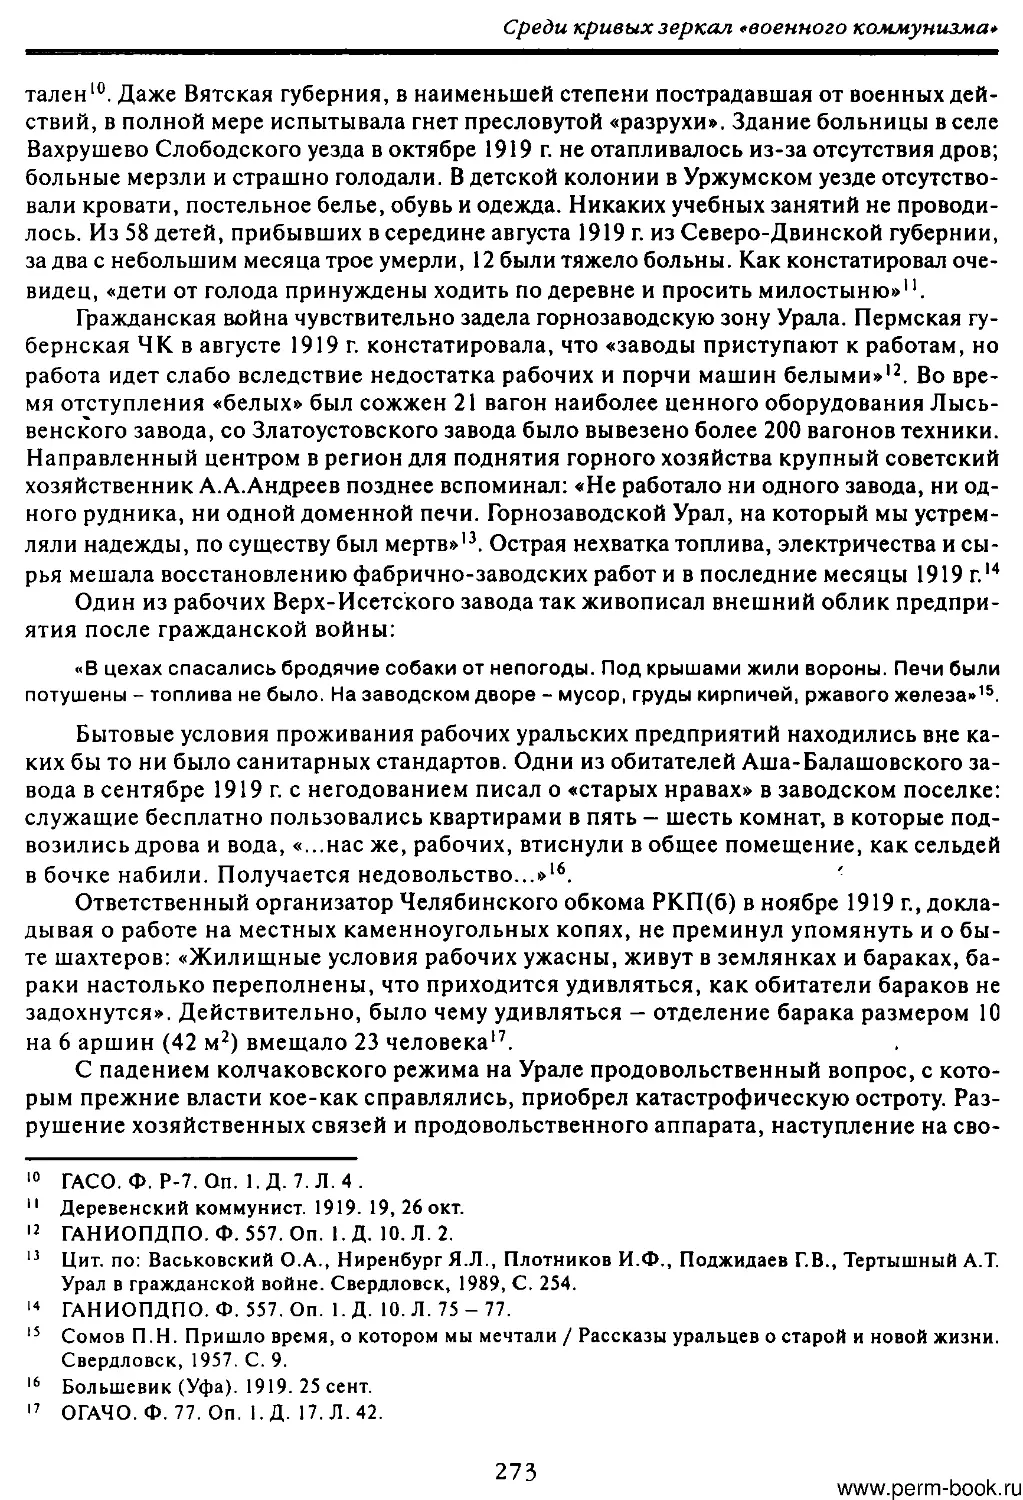 скан0274.pdf